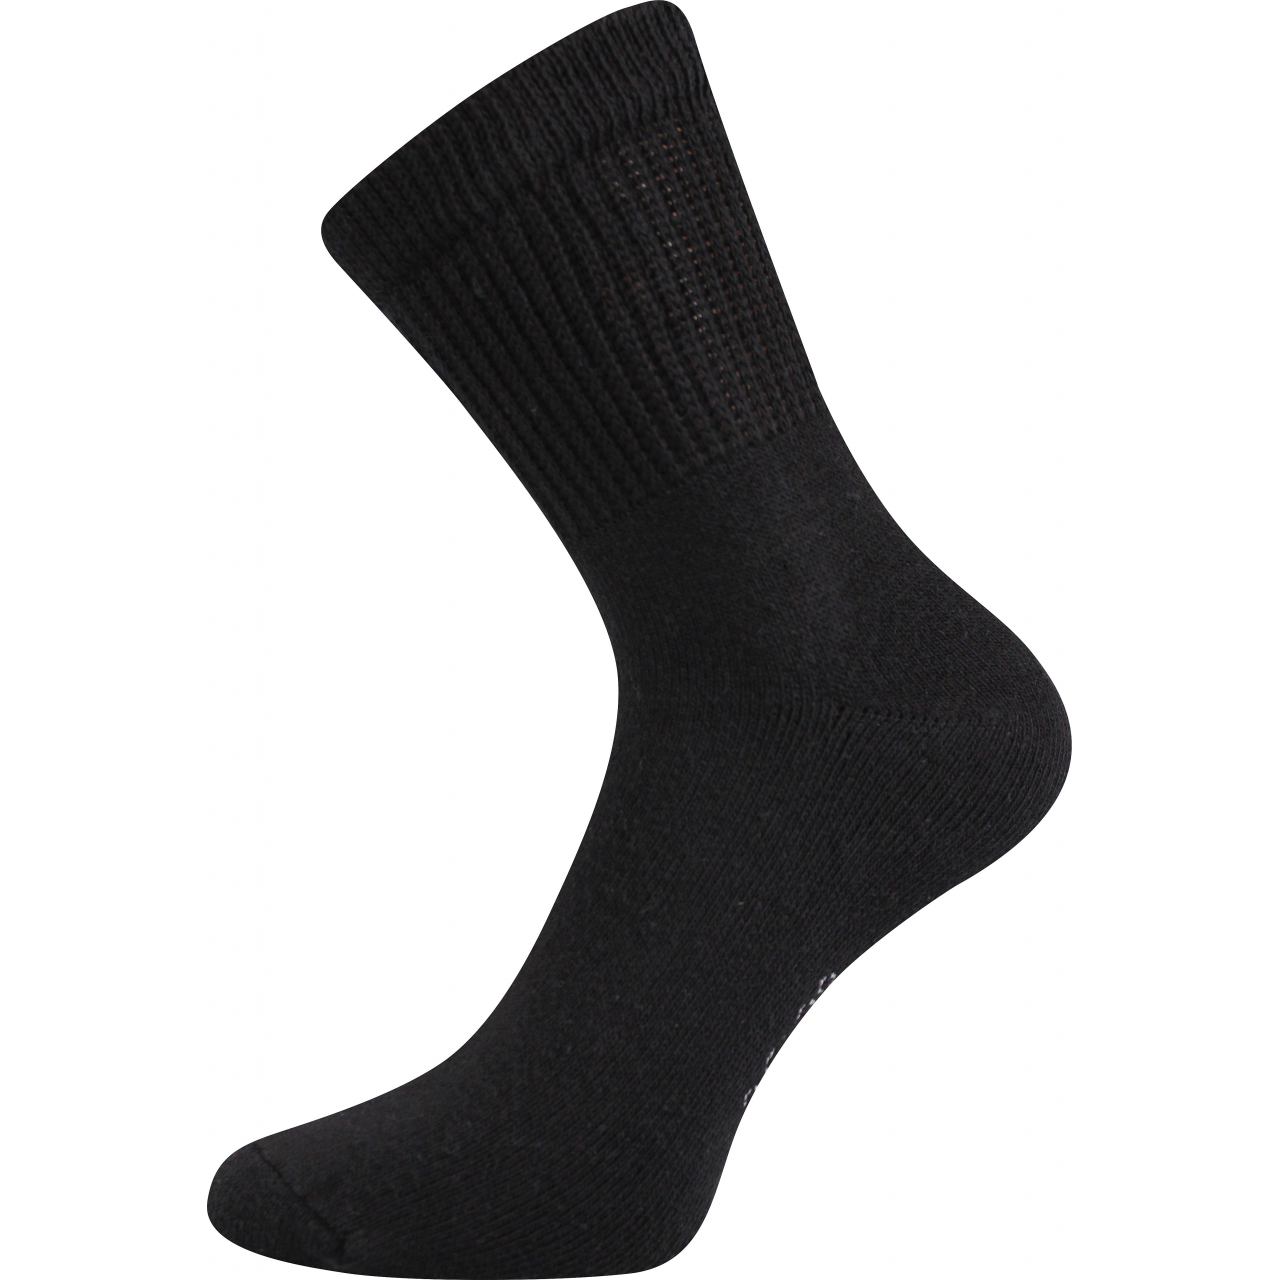 Ponožky trekingové unisex Boma 012-41-39 I - černé, 39-42